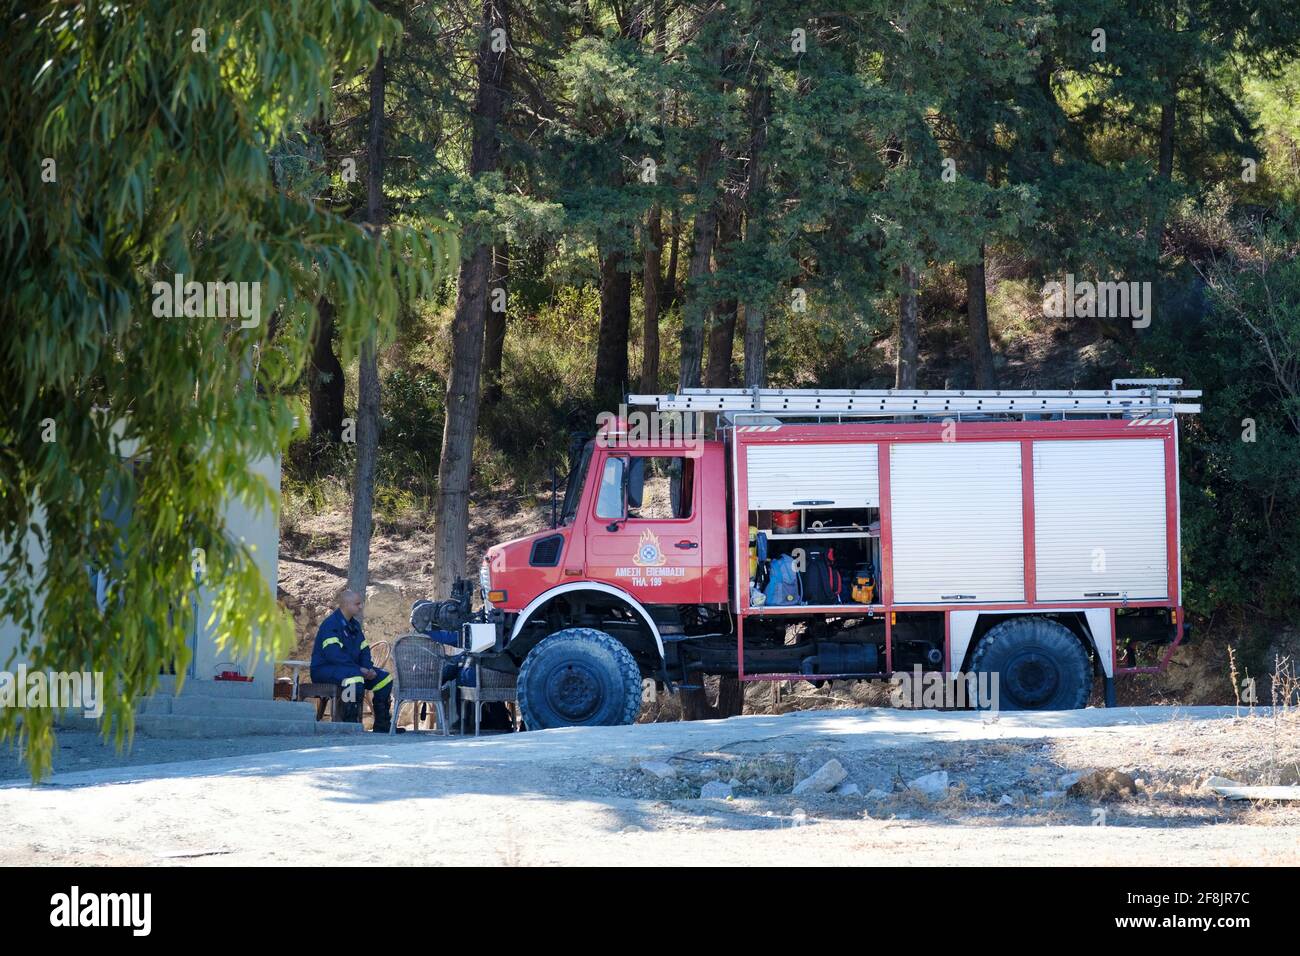 Une équipe grecque de lutte contre l'incendie se reposant à côté de leur moteur d'incendie. L'équipage est stationné près d'une forêt à flanc de colline comme première réponse aux incendies de forêt. Banque D'Images